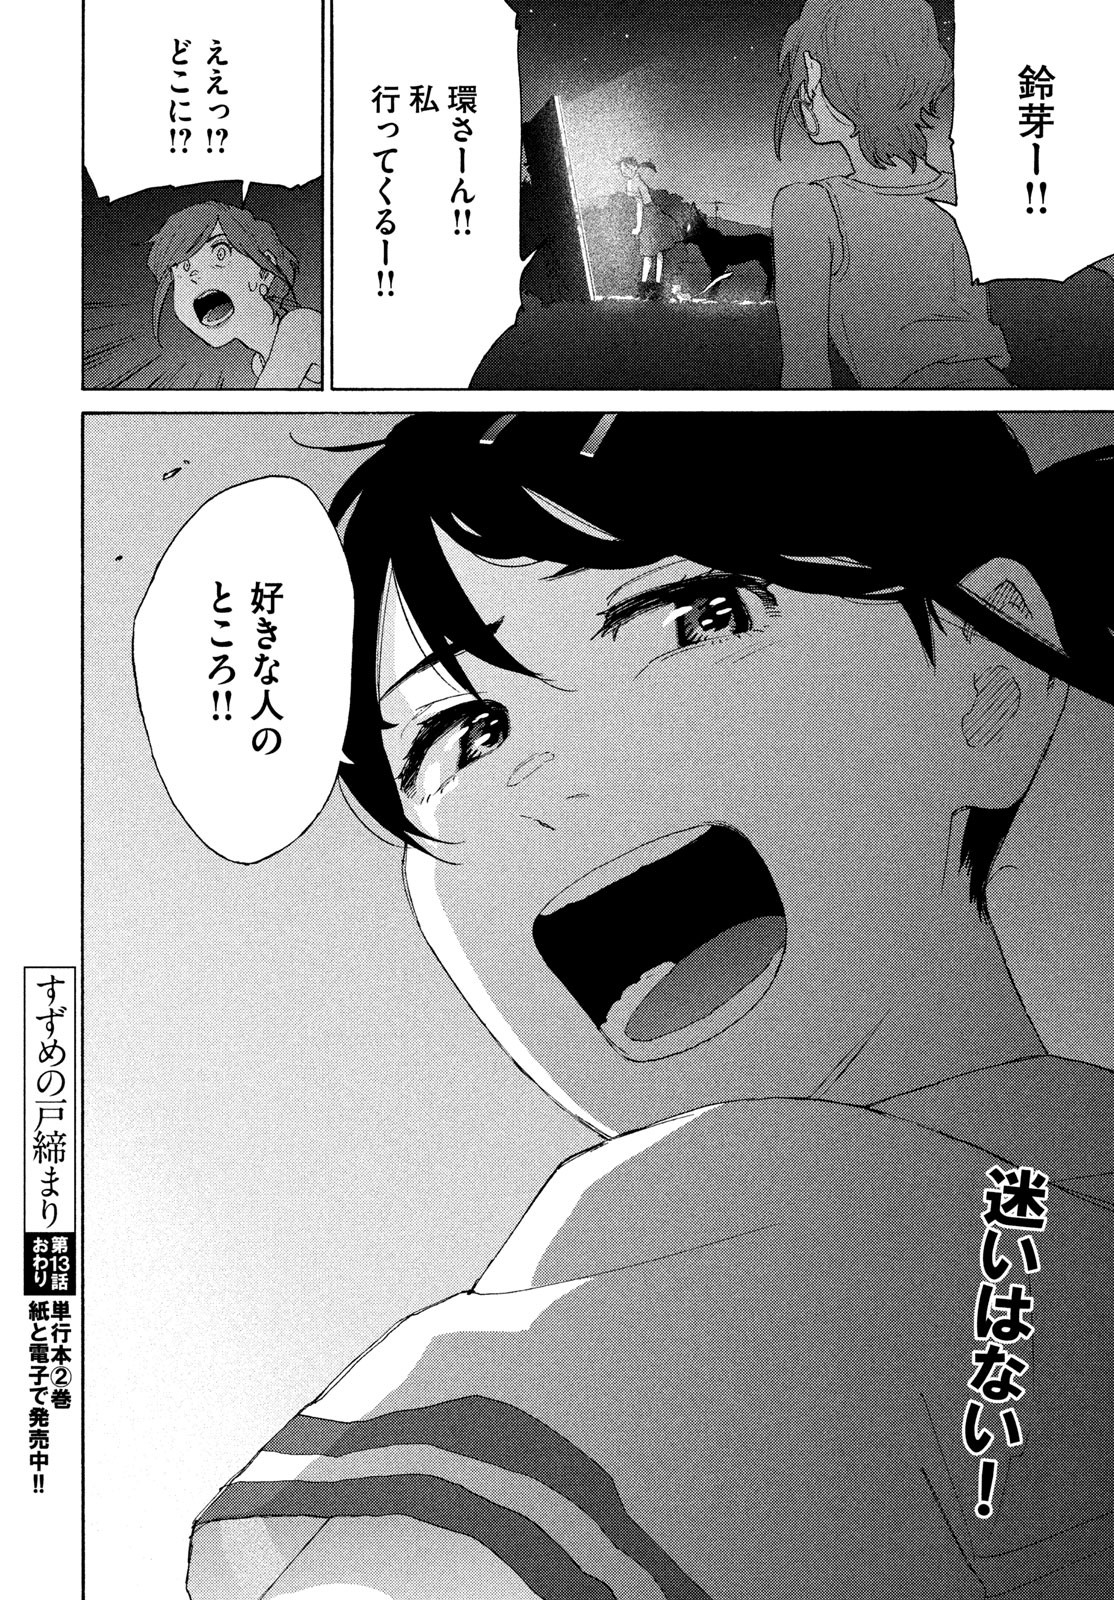 Suzume no Tojimari - Chapter 13 - Page 24